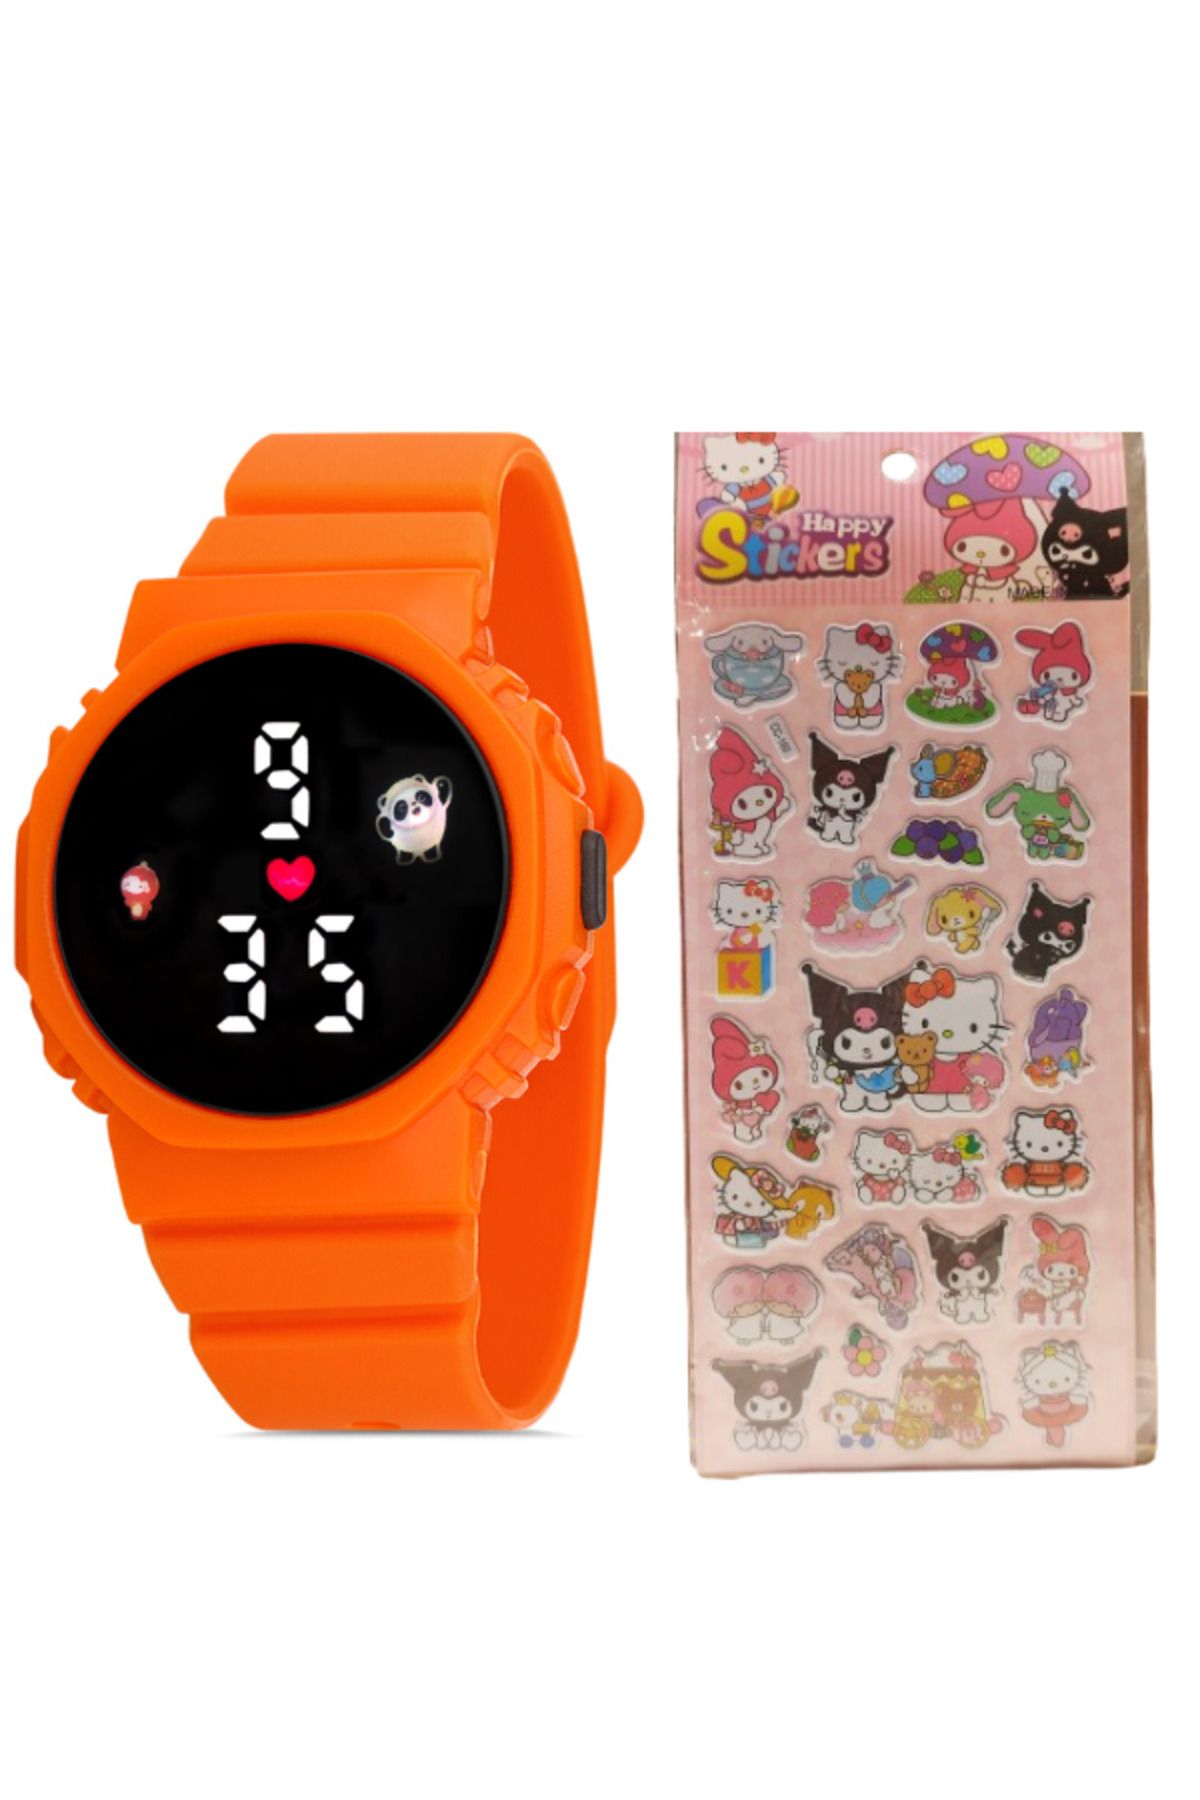 Black Point Turuncu Renk Kız Çocuk Kol Saati Led Kız Çocuk Saati ve Hello Kitty Arkadaşları Sticker Hediyeli